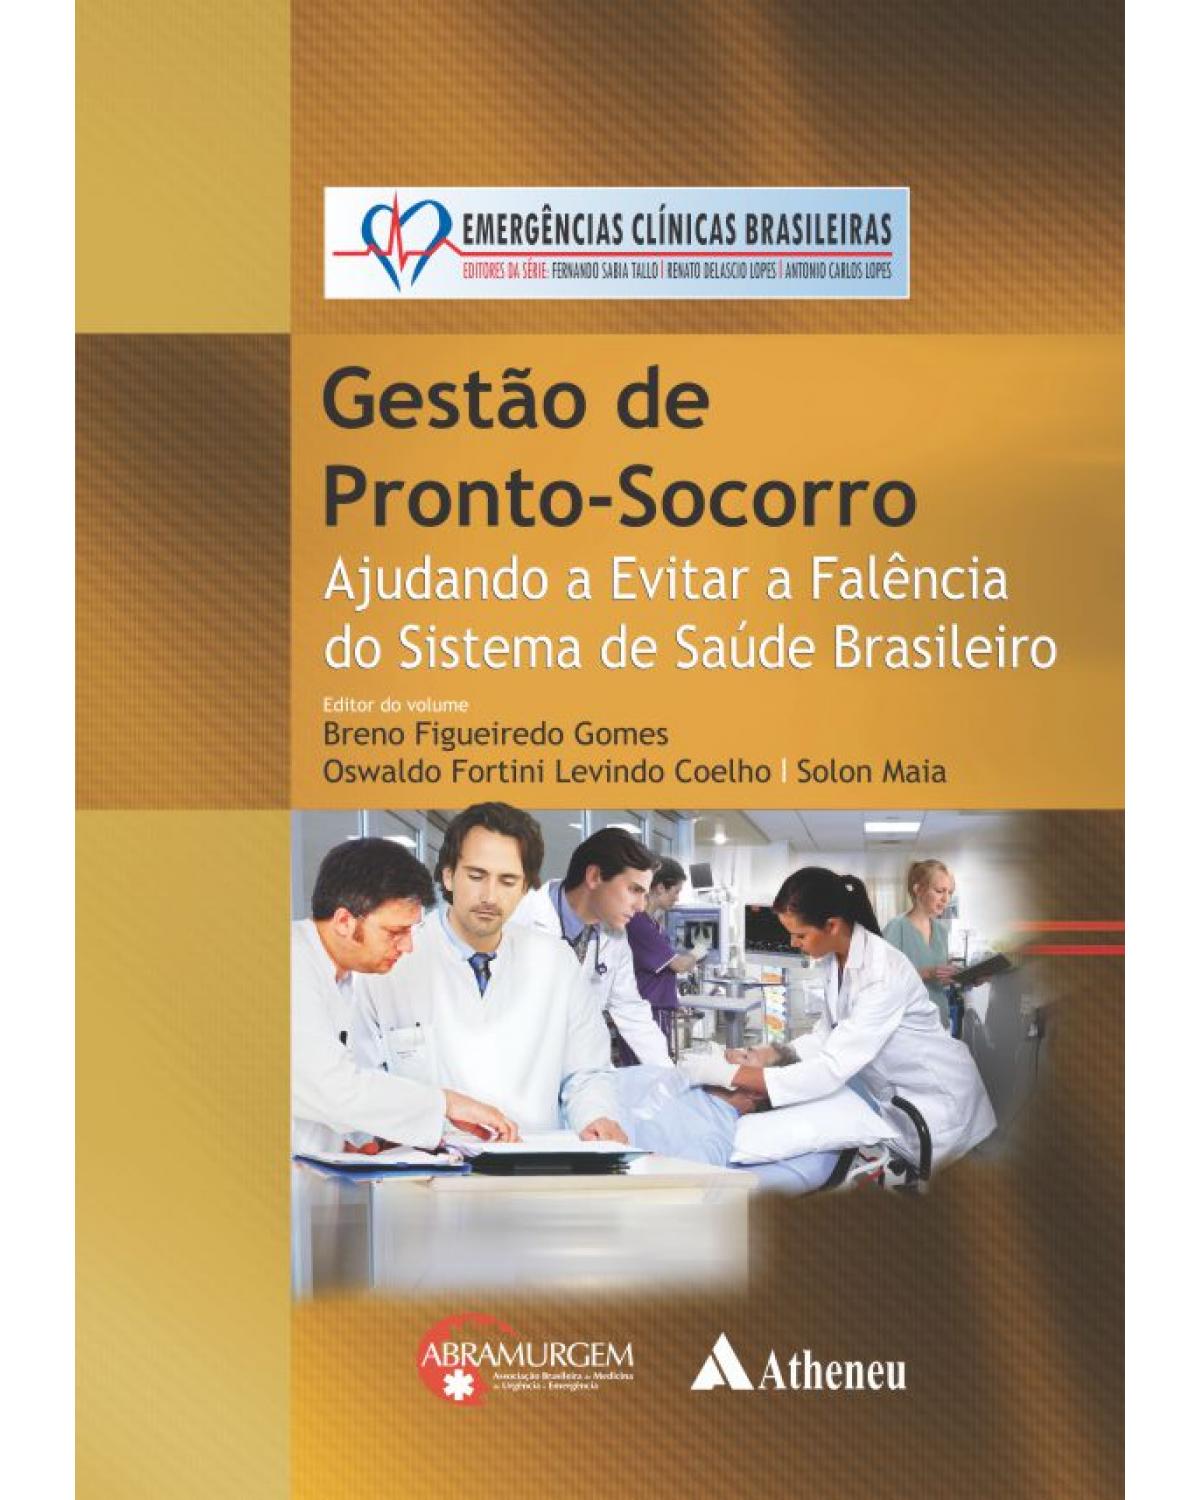 Gestão de pronto-socorro - ajudando a evitar a falência do sistema de saúde brasileiro - 1ª Edição | 2014